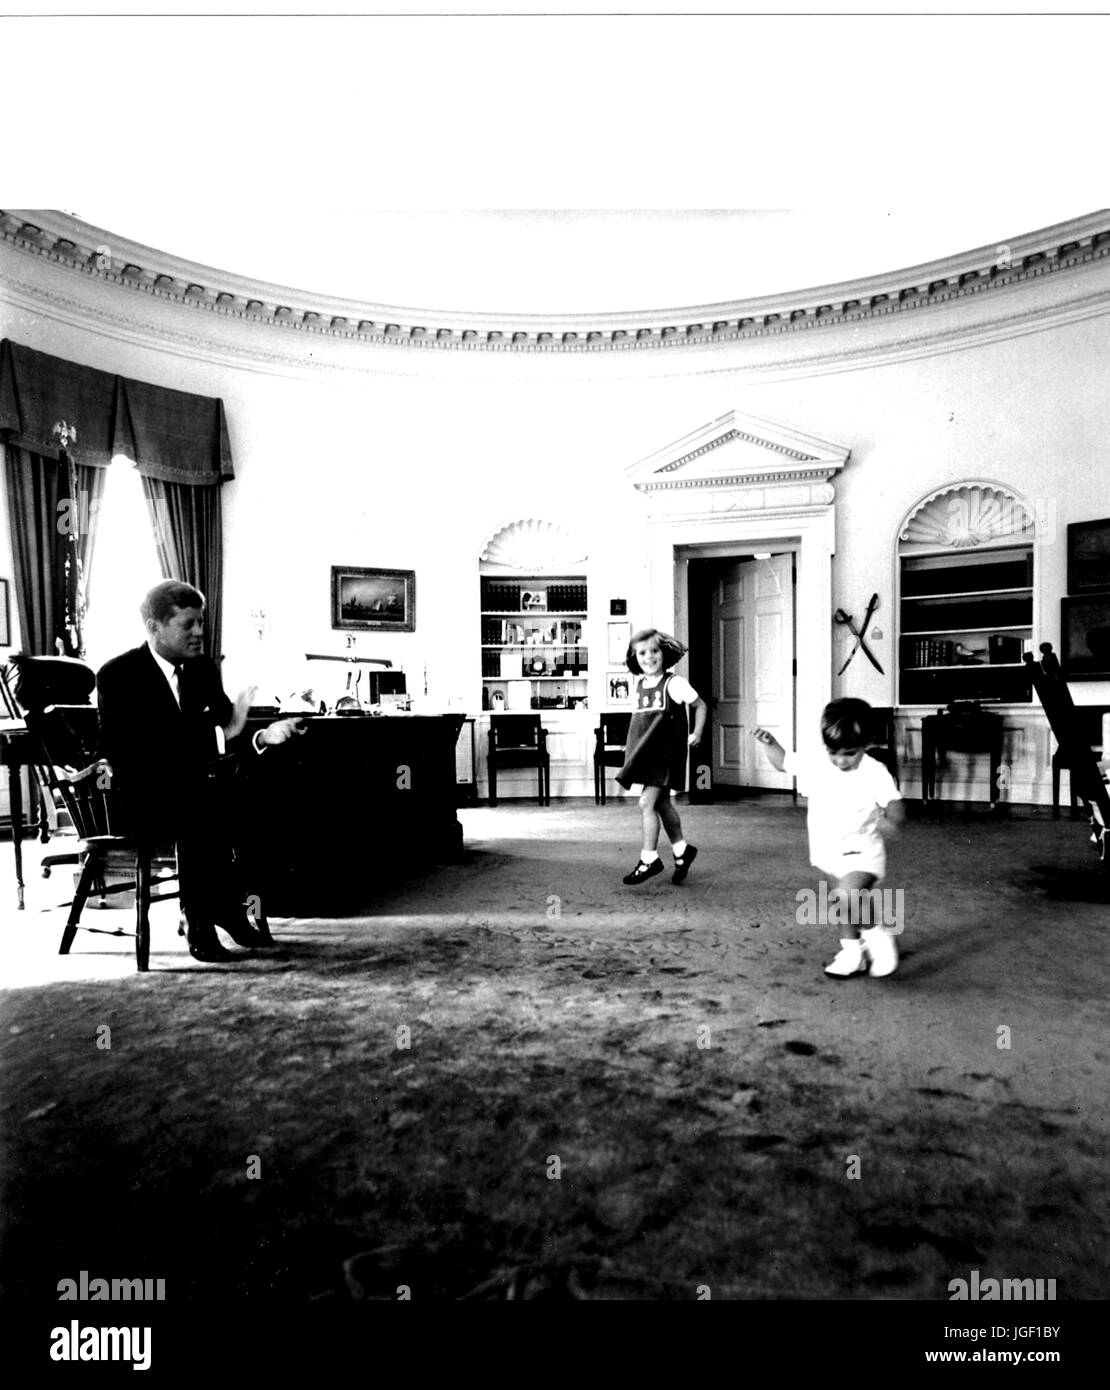 Il presidente statunitense John F Kennedy lavora nell'Ufficio Ovale della Casa Bianca mentre i bambini John Kennedy Jr e Caroline Kennedy play, Ottobre 10, 1962. Foto di Cecil Stoughton. Foto Stock